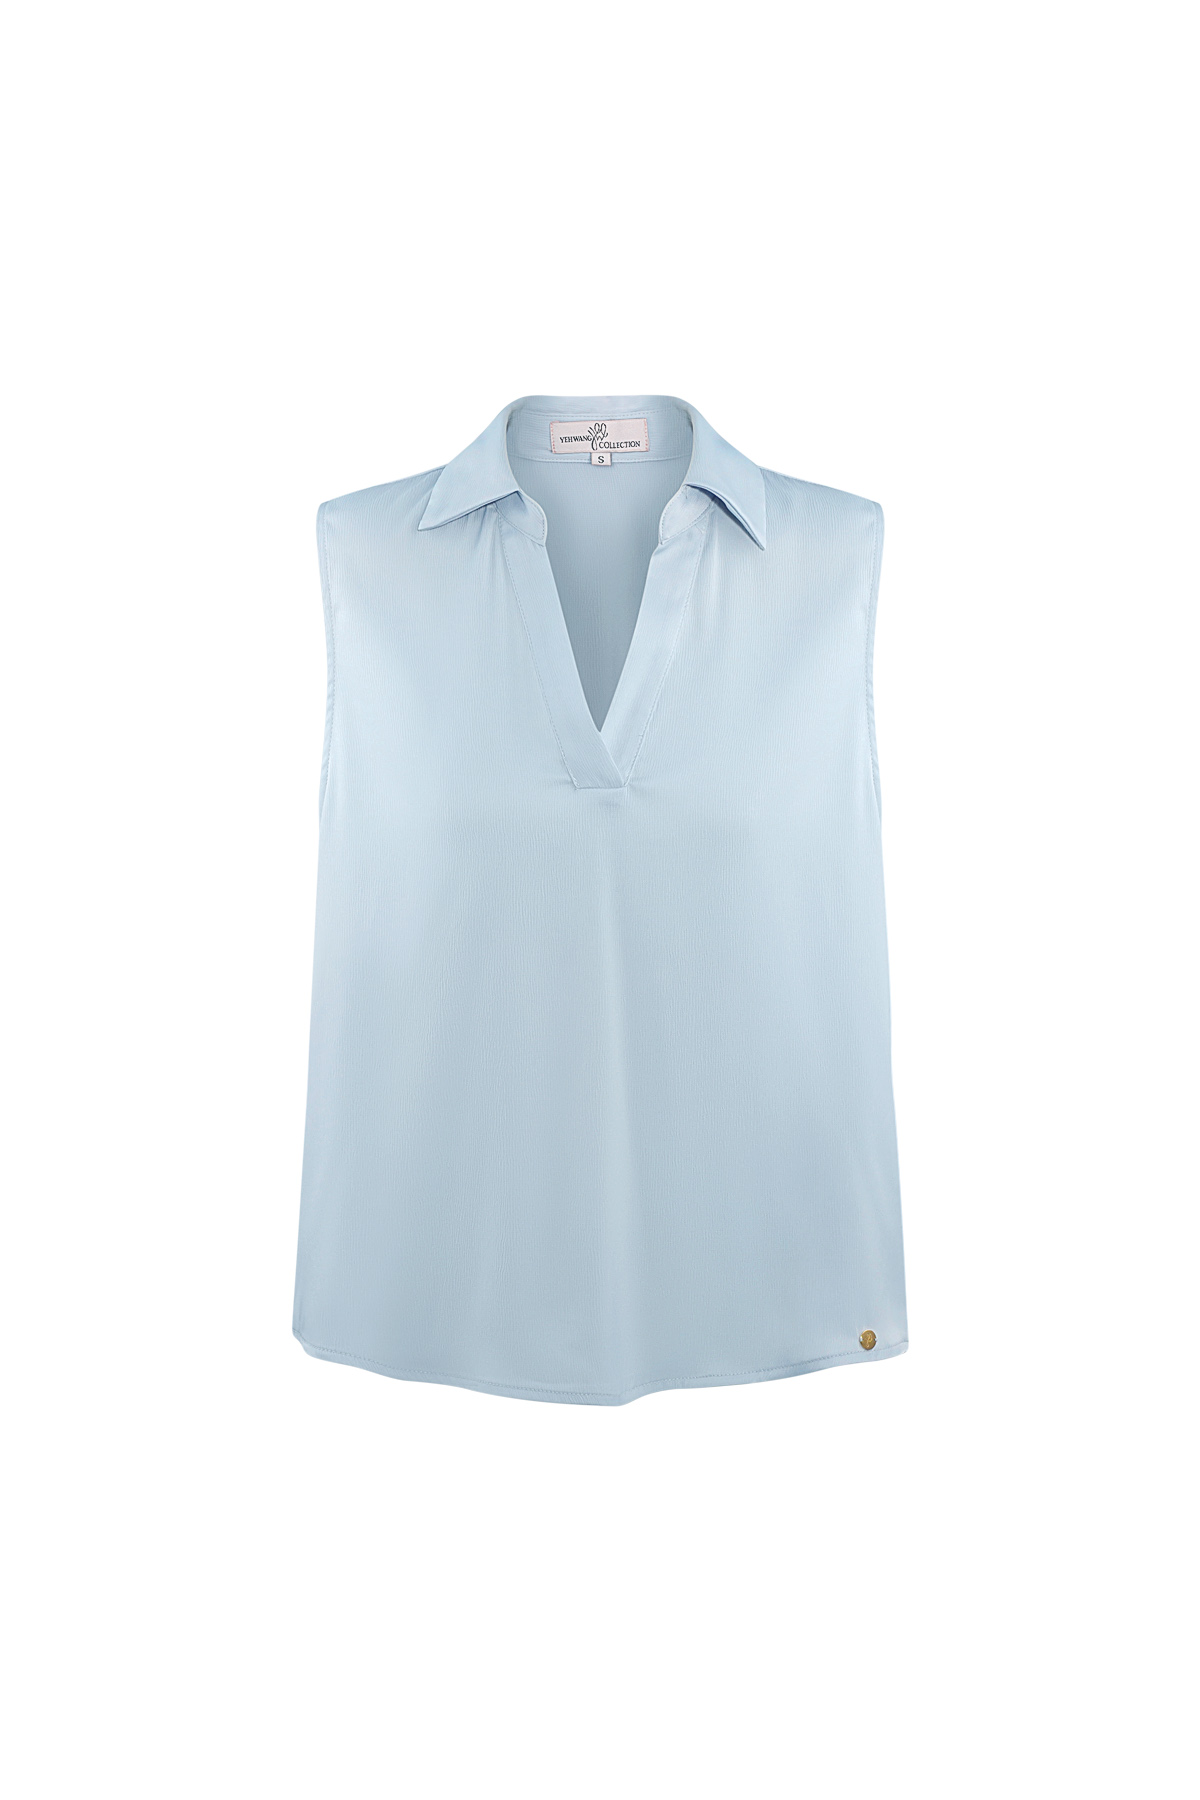 Sleeveless blouse with v-neck - light blue